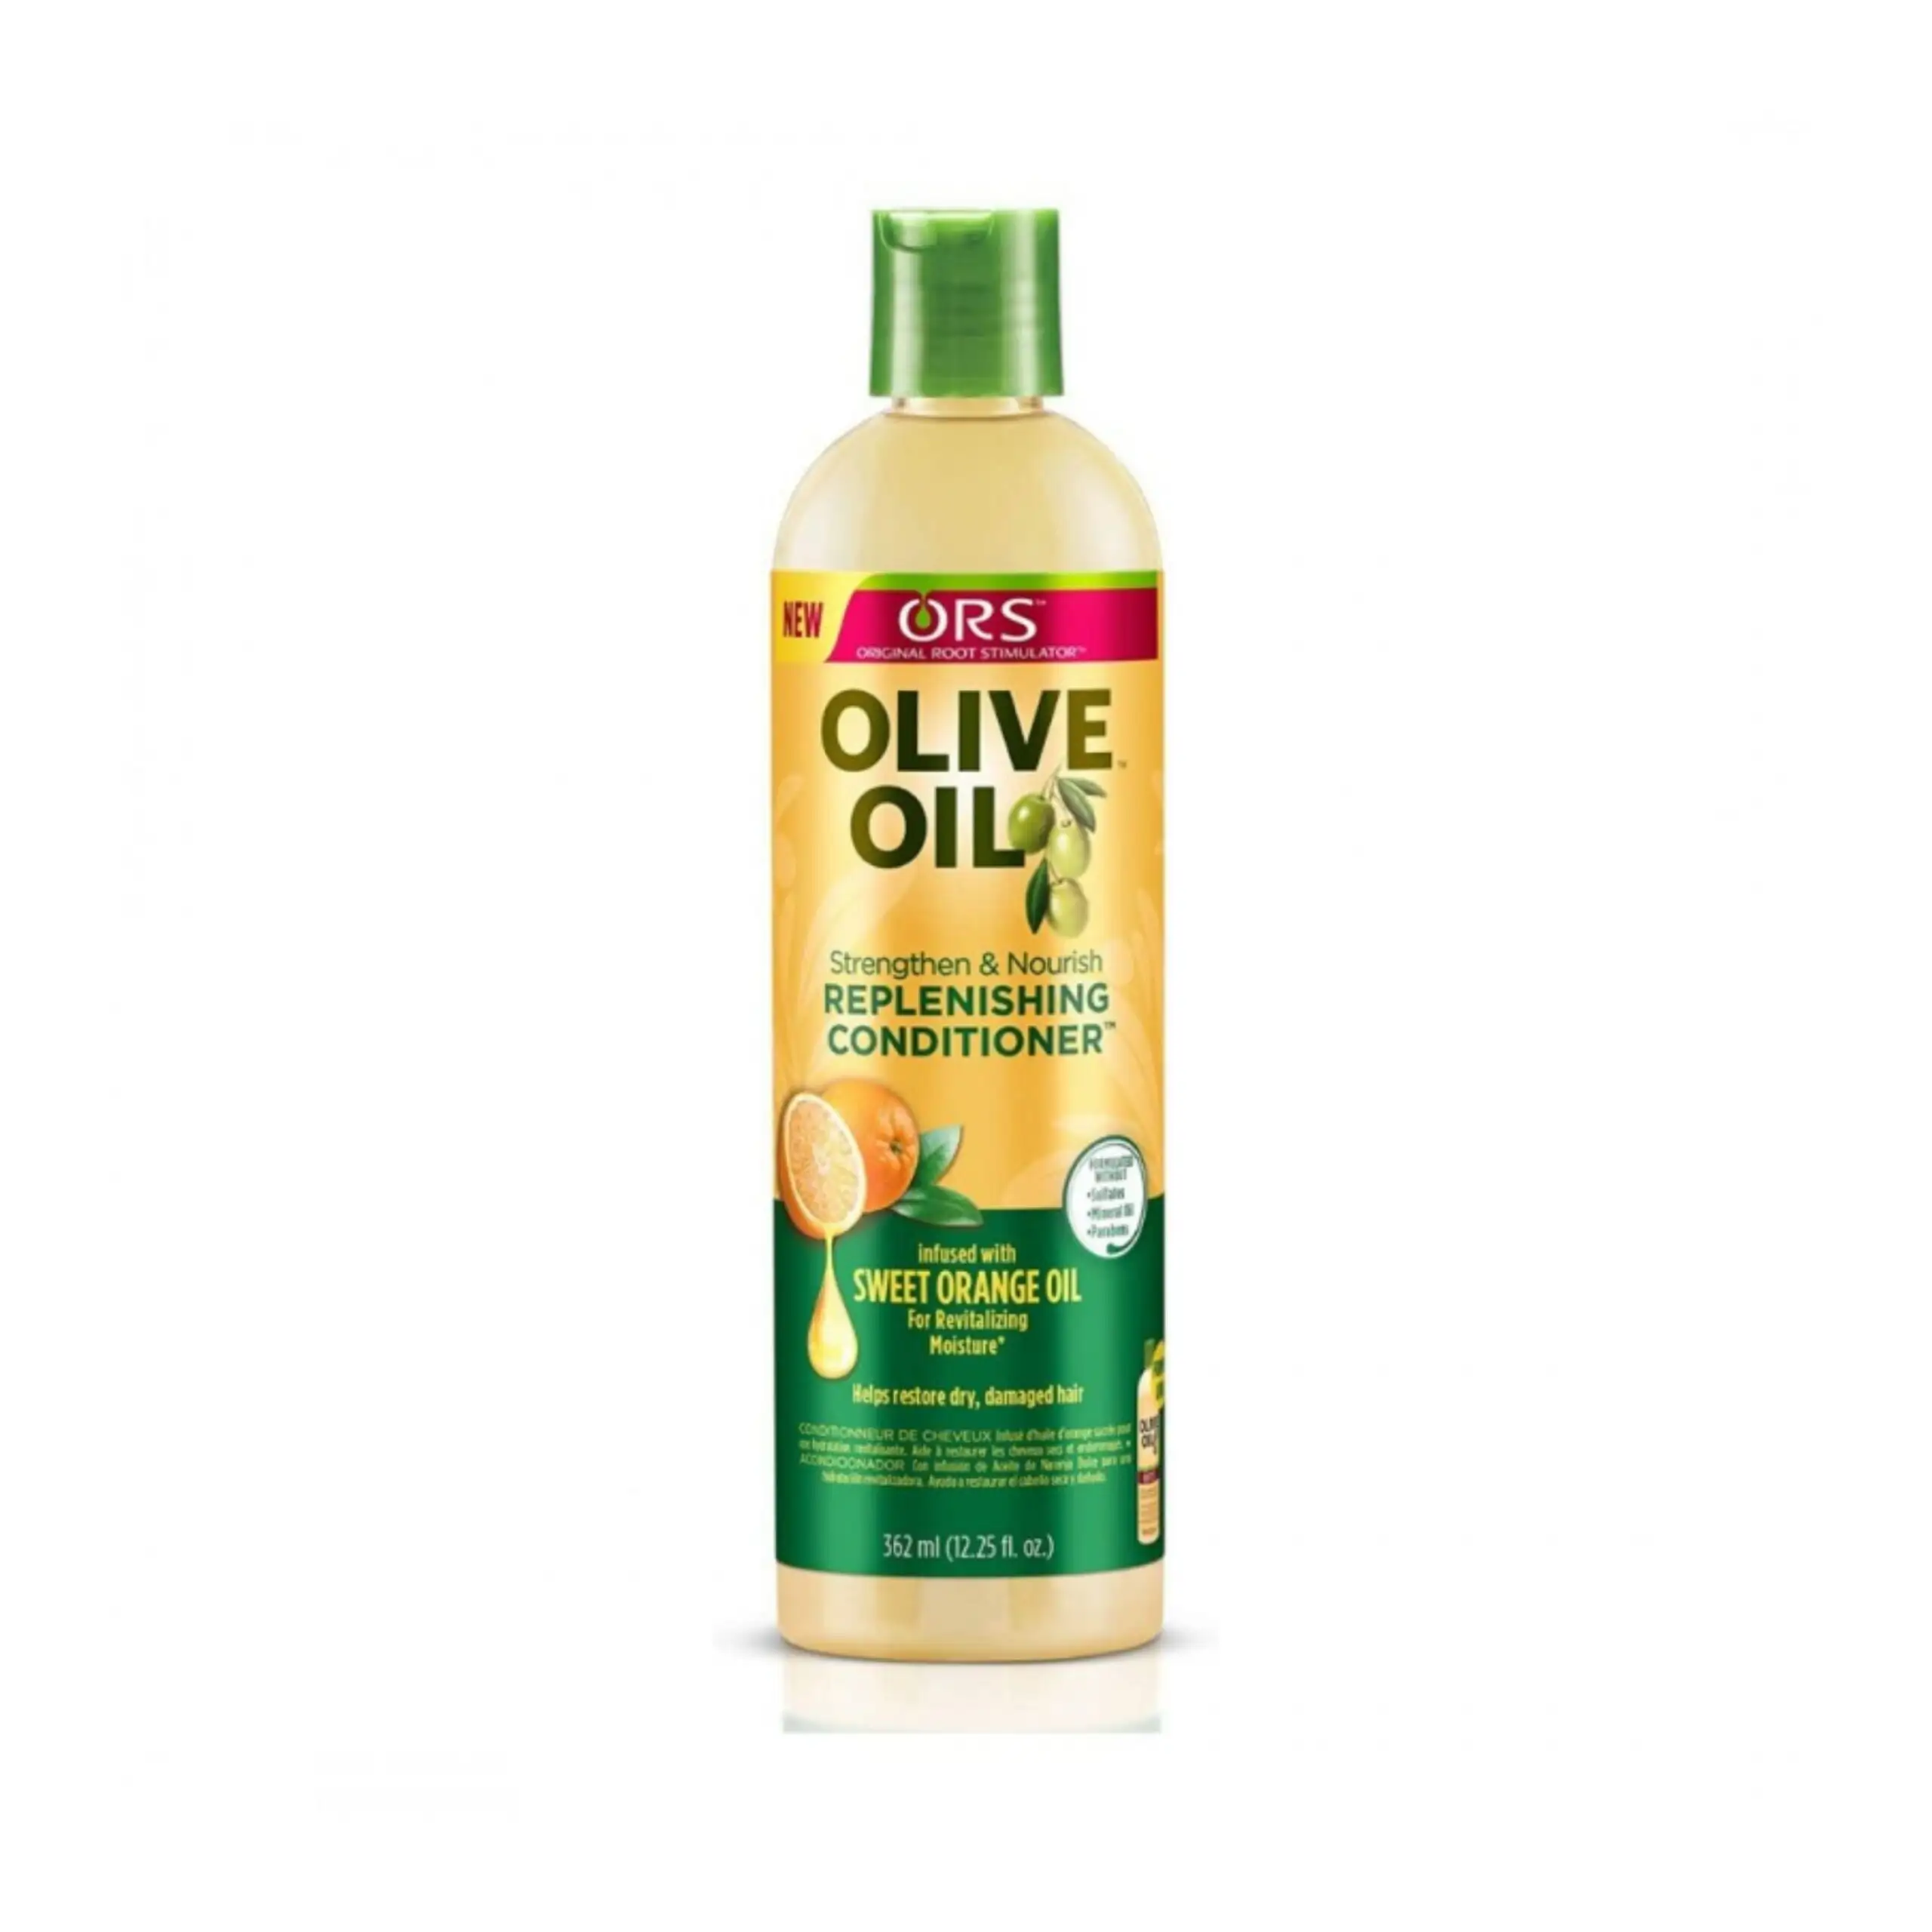 Ors olive oil strengthen nourish replenishing conditioner 470 ml_7794. DIAYTAR SENEGAL - Votre Passage vers le Chic et l'Élégance. Naviguez à travers notre boutique en ligne pour trouver des produits qui ajoutent une touche sophistiquée à votre style.